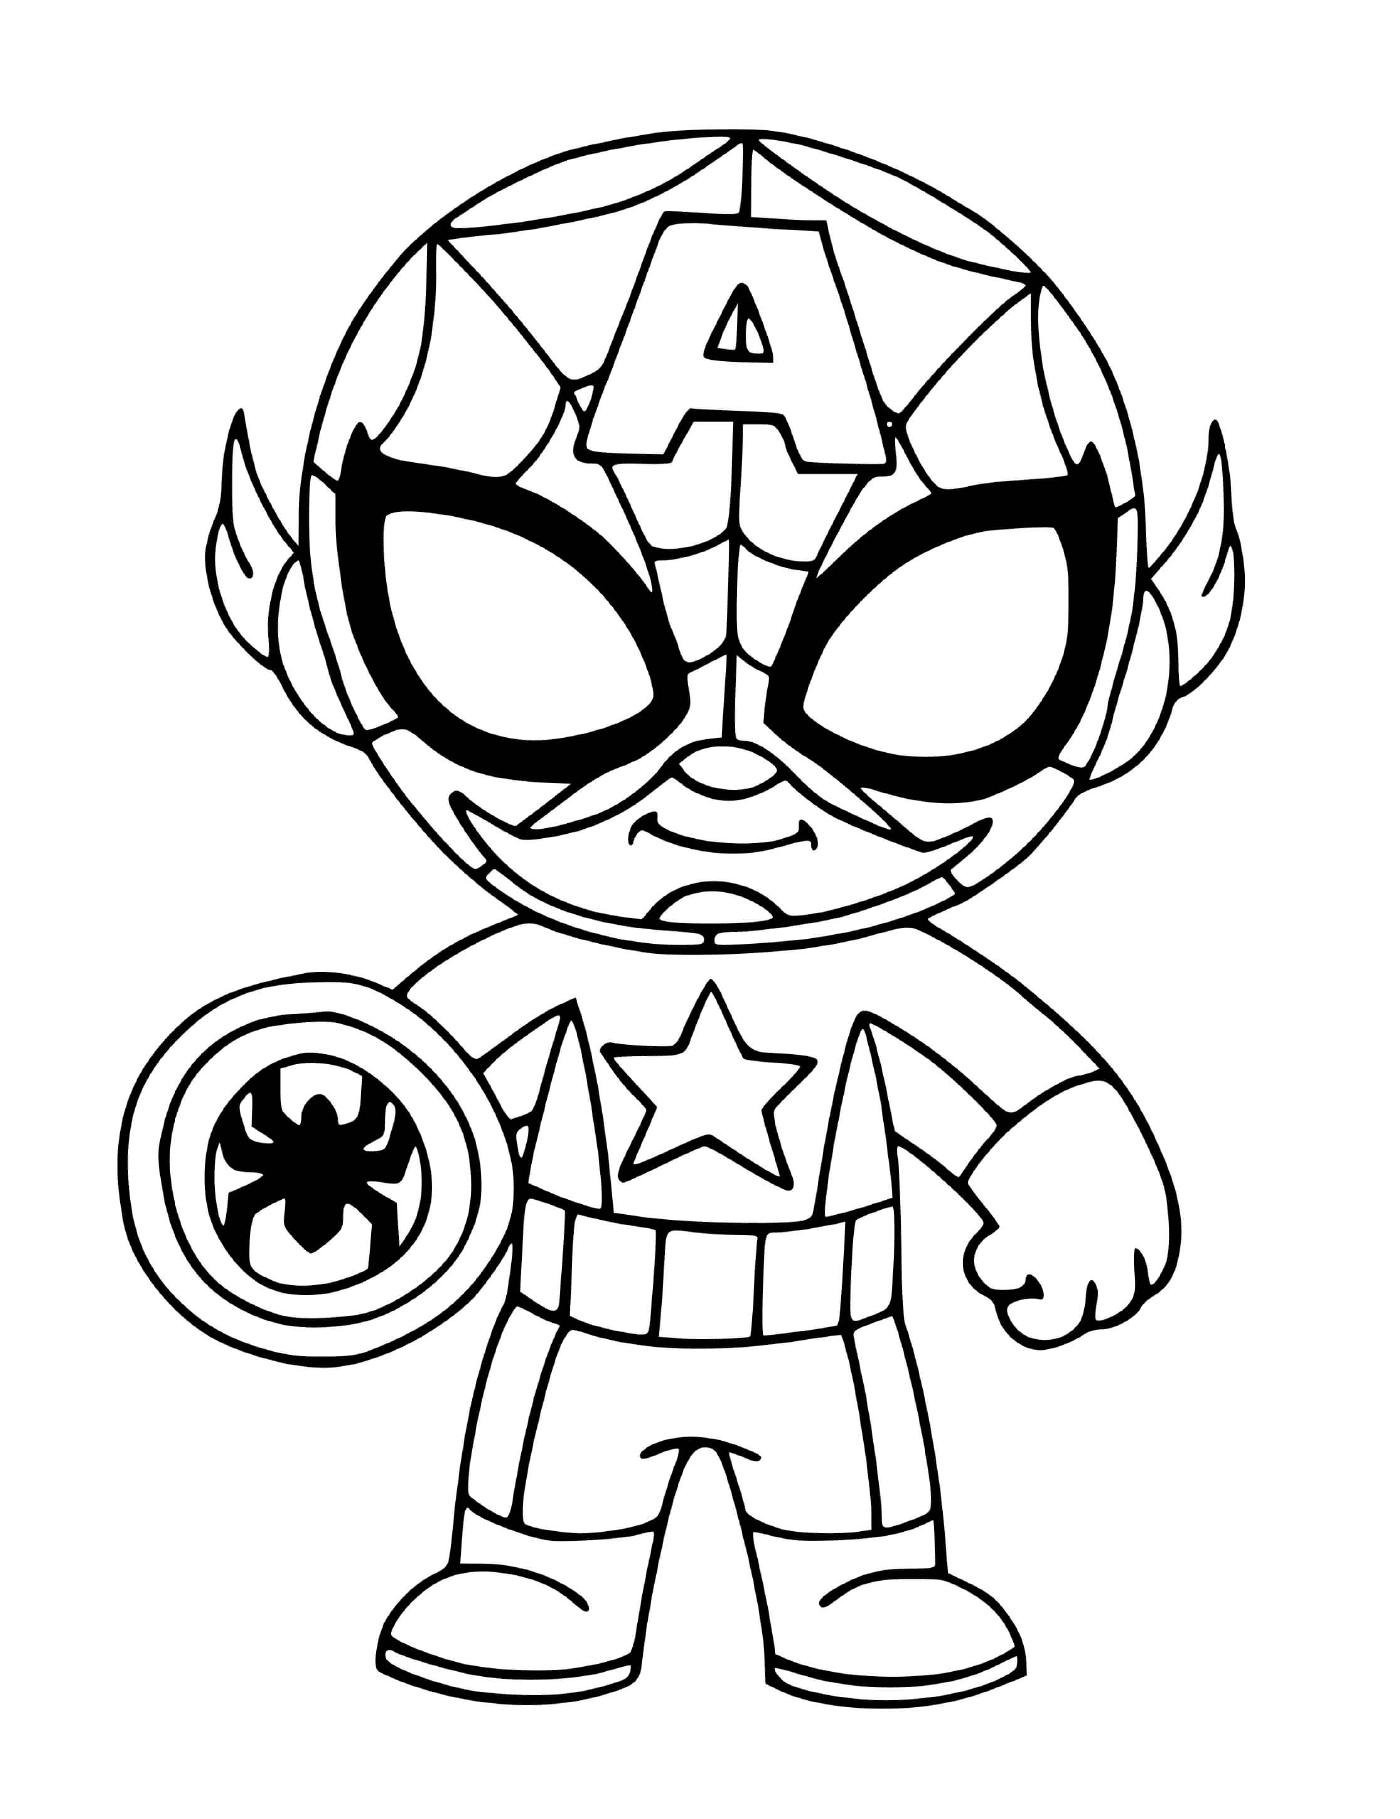  Boysonnet disfrazada de fusión entre el Capitán América y Spider-Man 